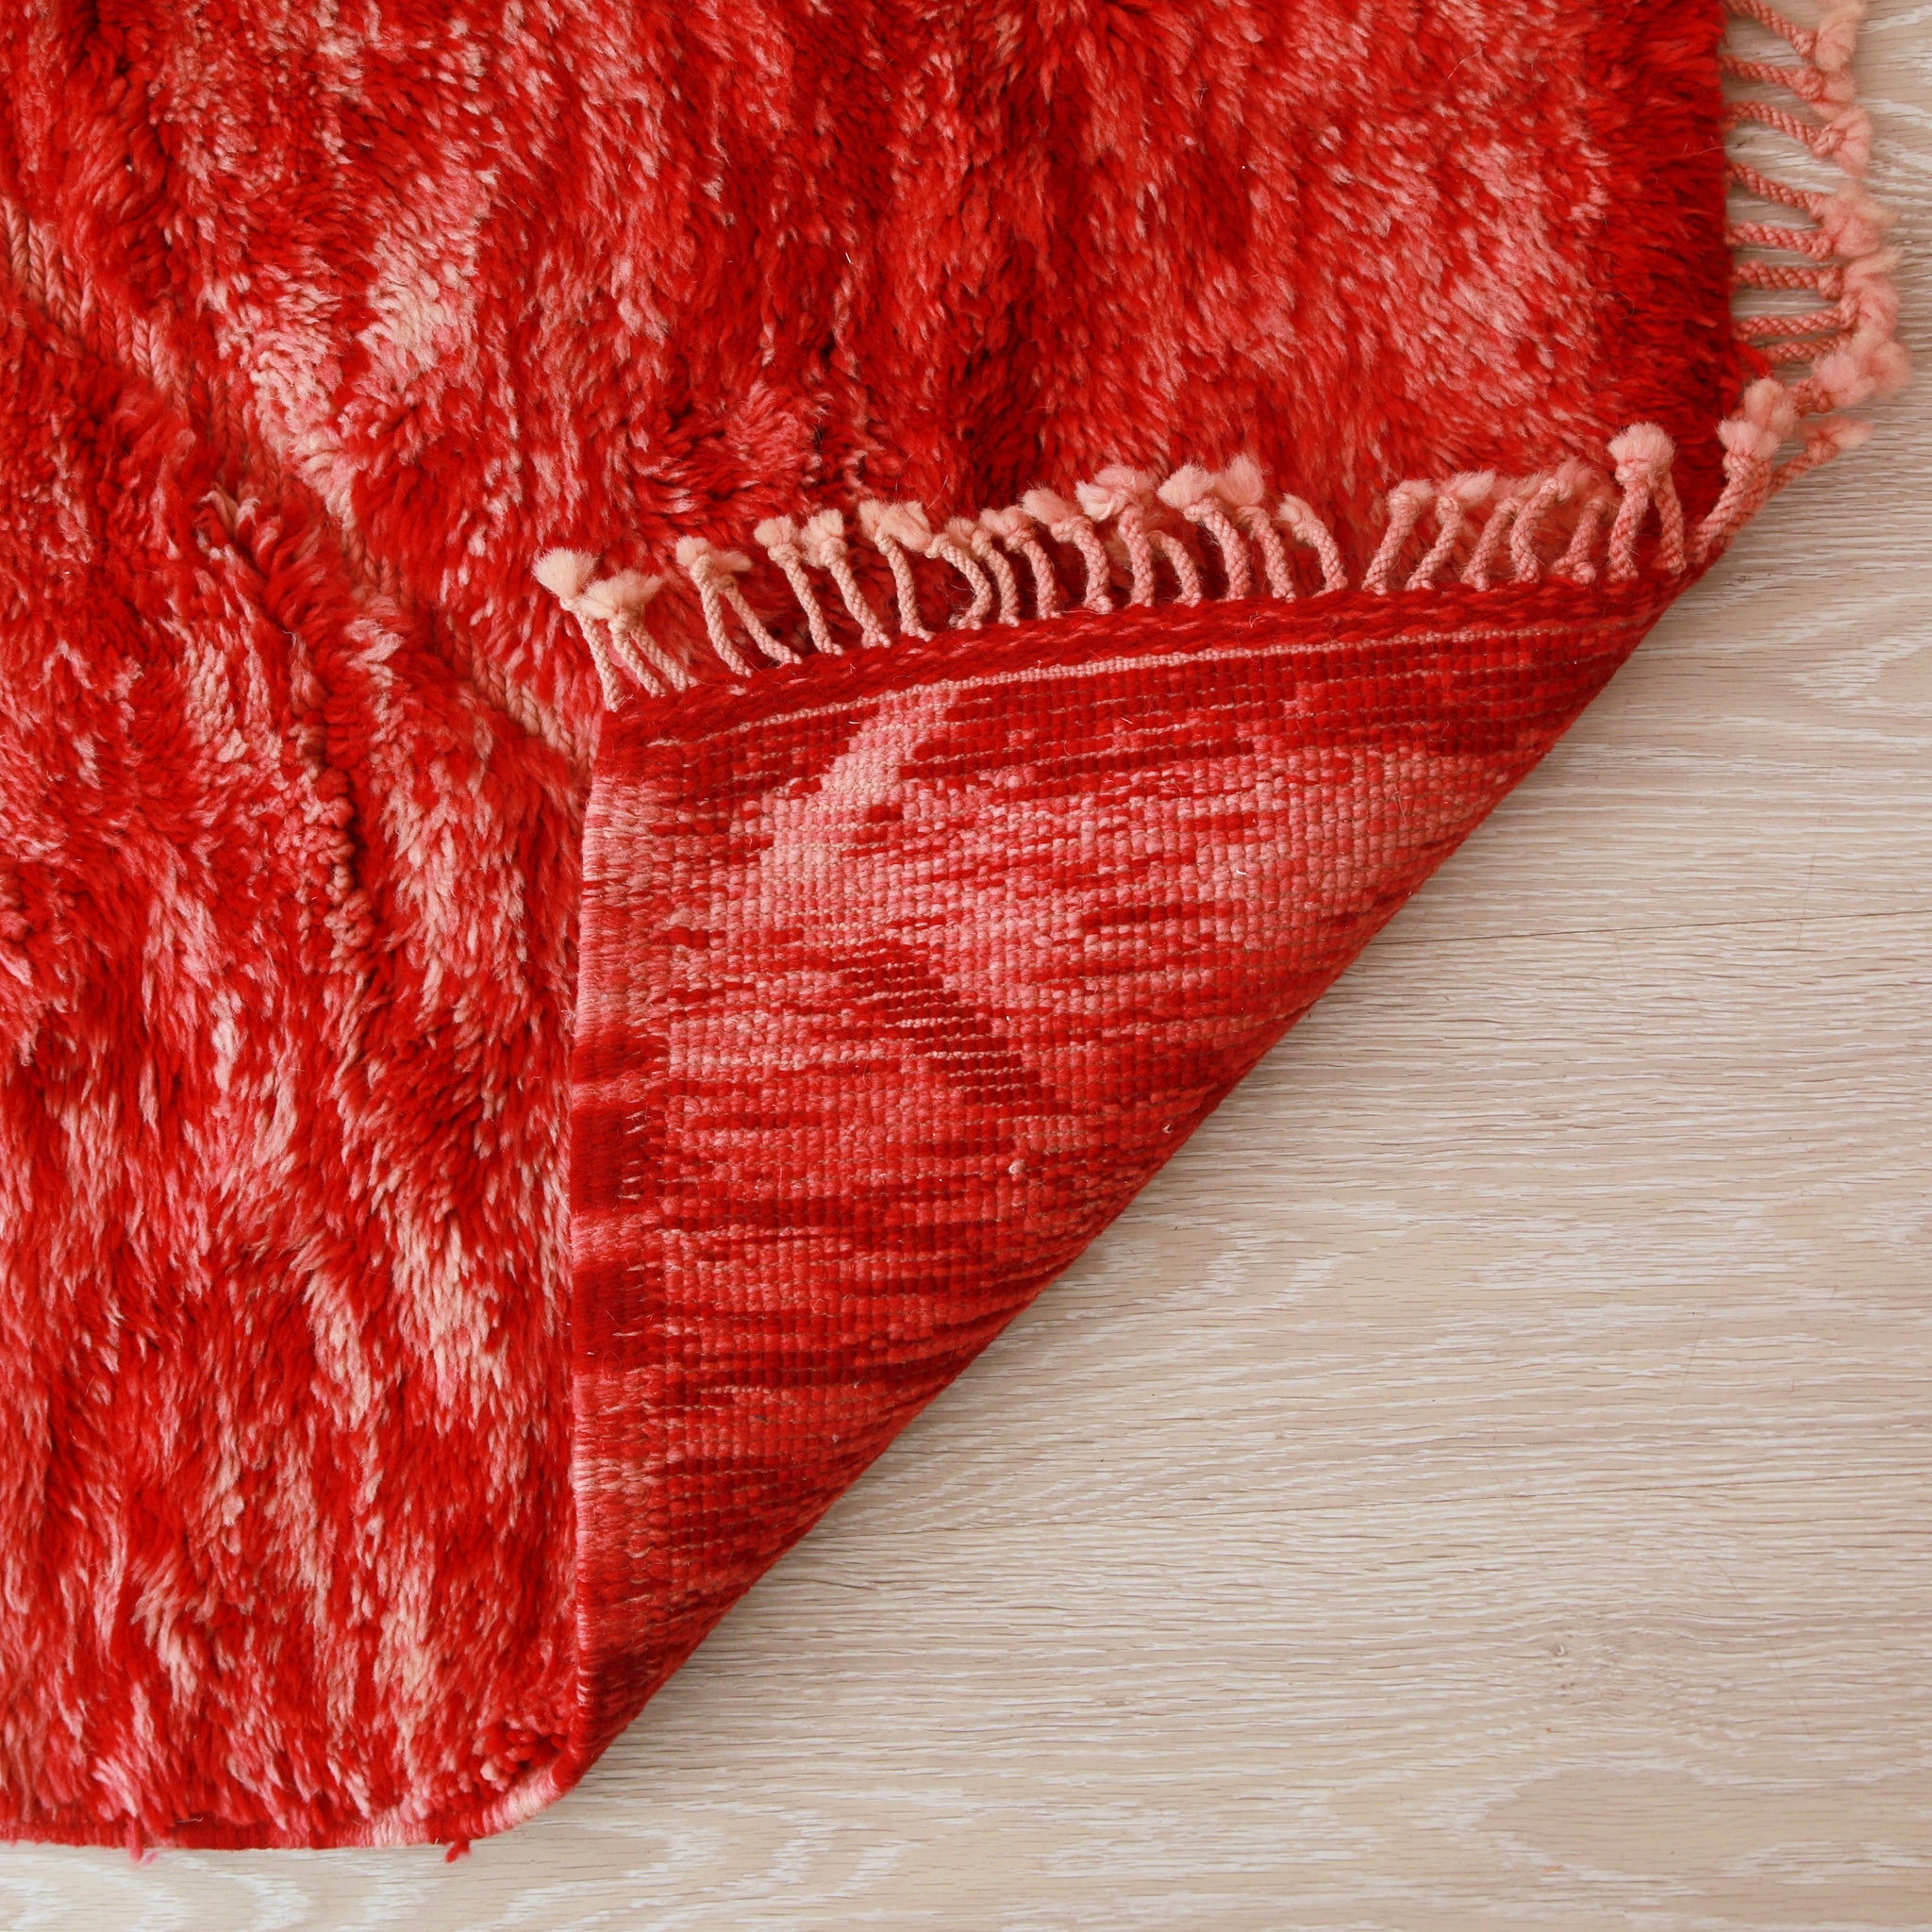 retro di un tappeto beni mrirt rosso che risalta la qualità e la precisione dei nodi e delle finiture laterali